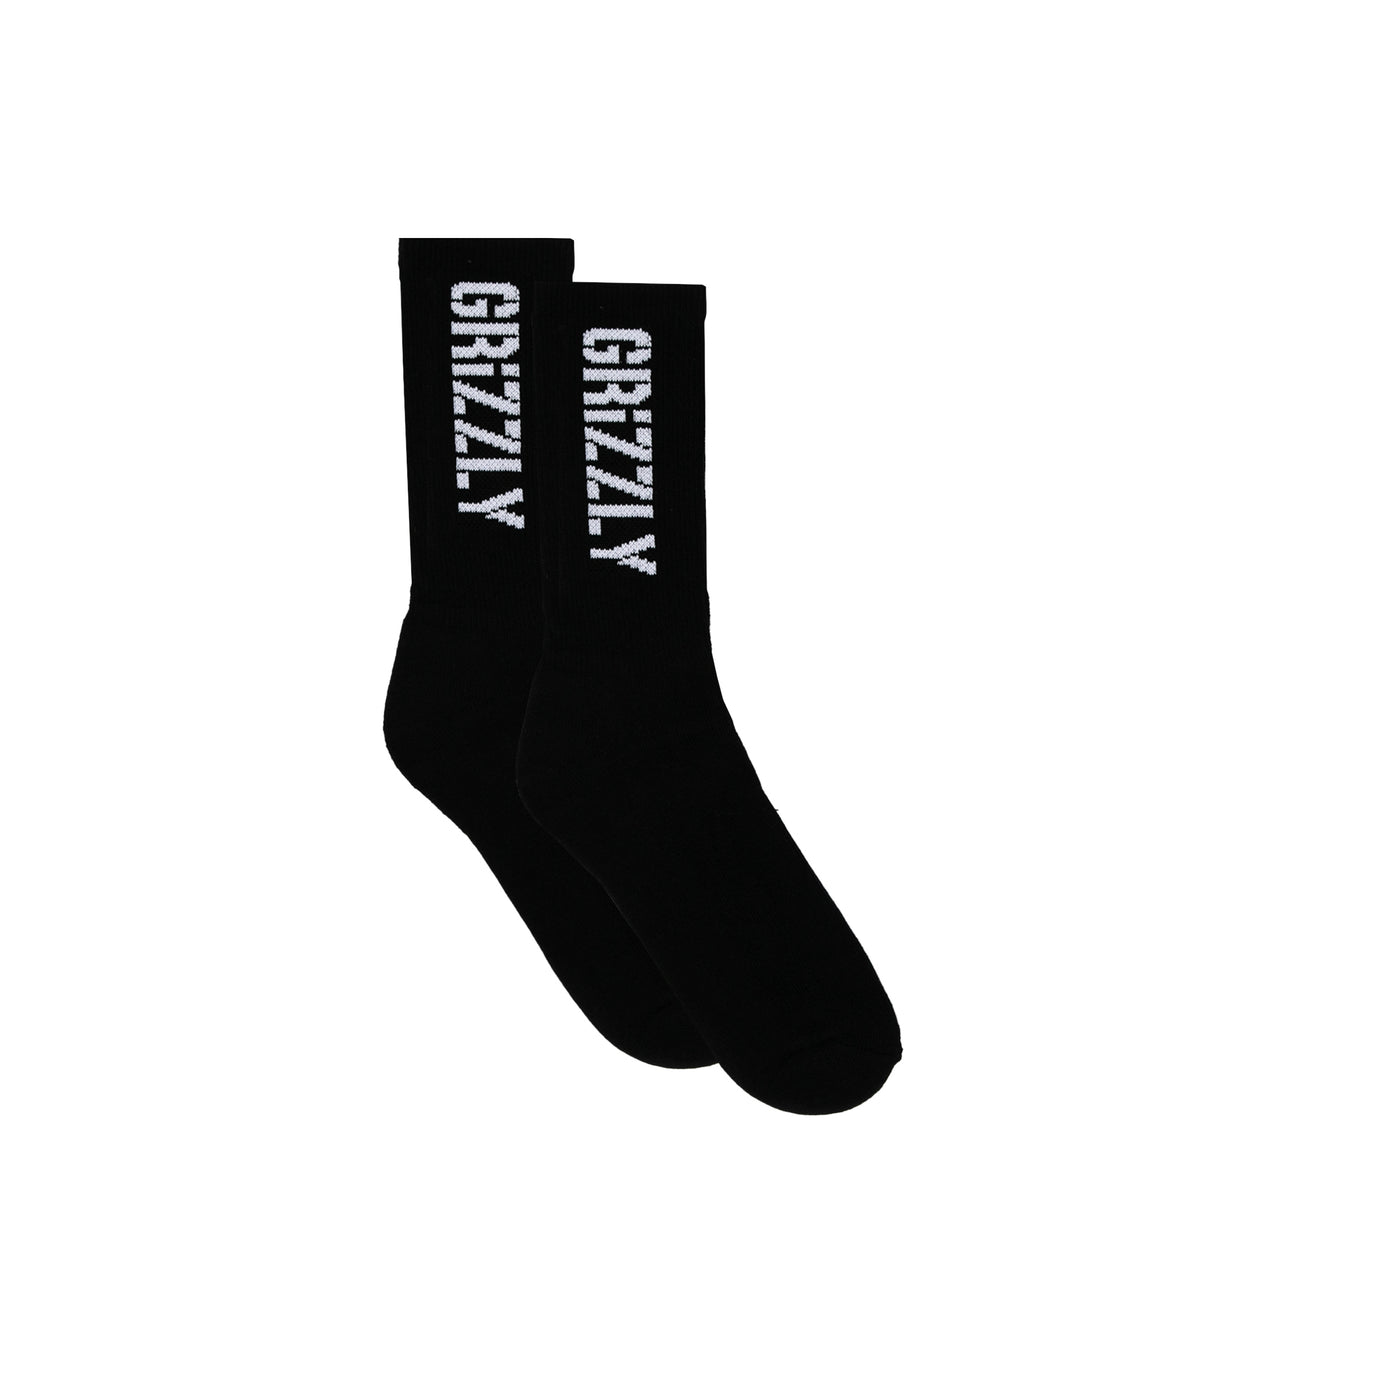 Stamp Socks - Black